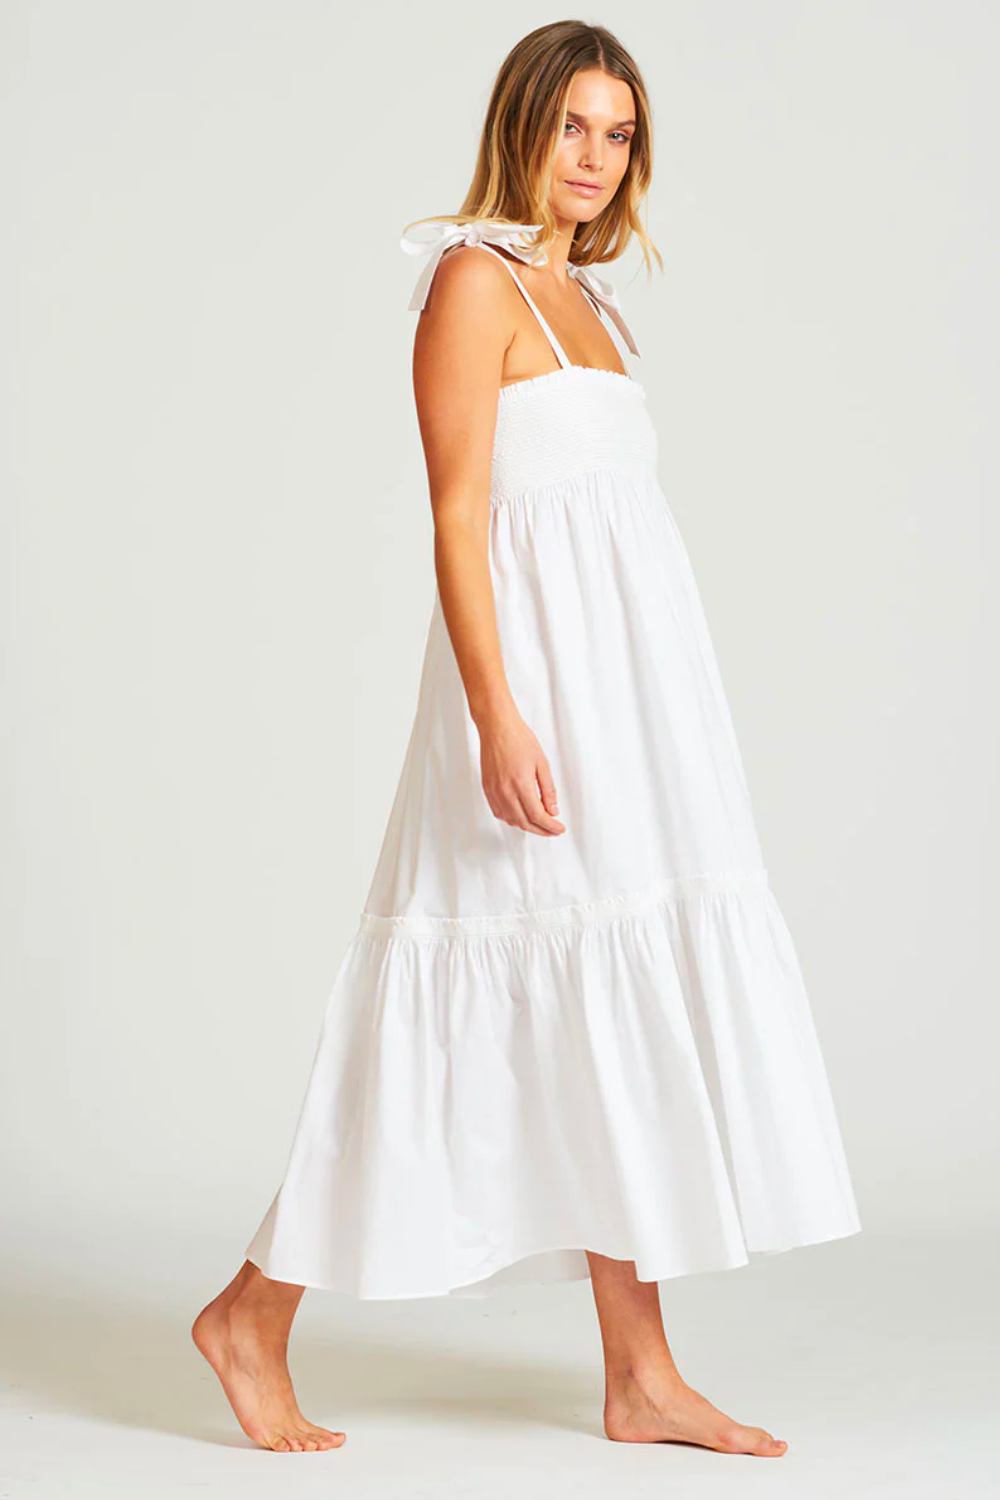 The Skirt Dress - White